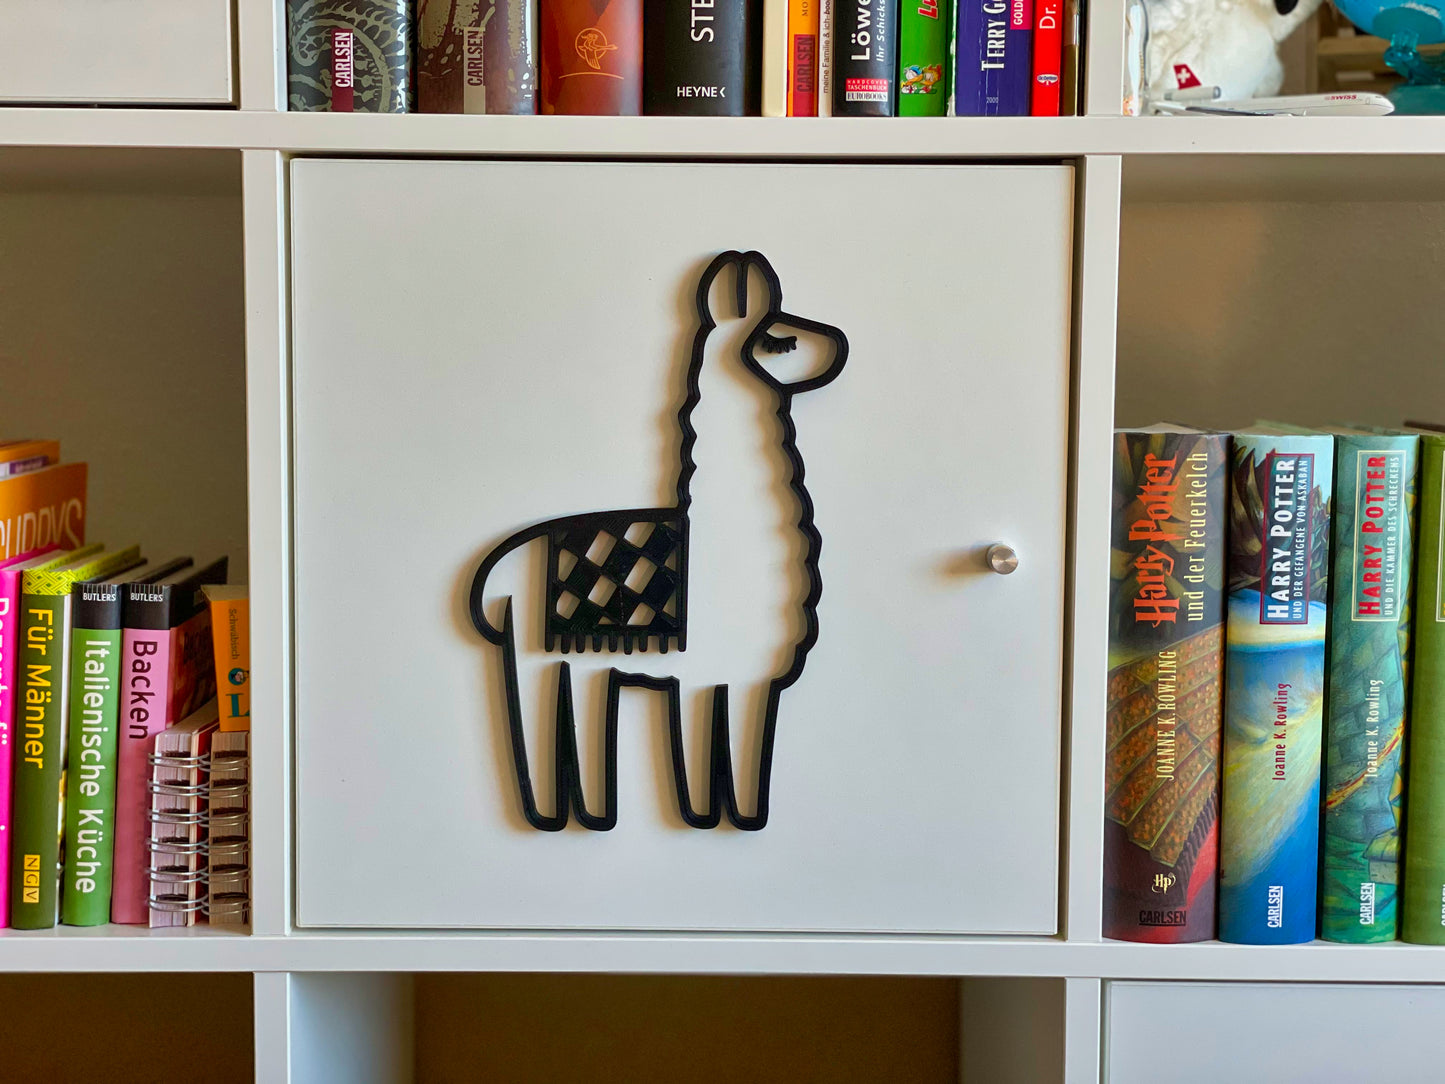 Lama-Zauber: Wanddekoration in verschiedenen Farben 3D-gedruckt - Exotische Tierwelt für Ihr Zuhause!